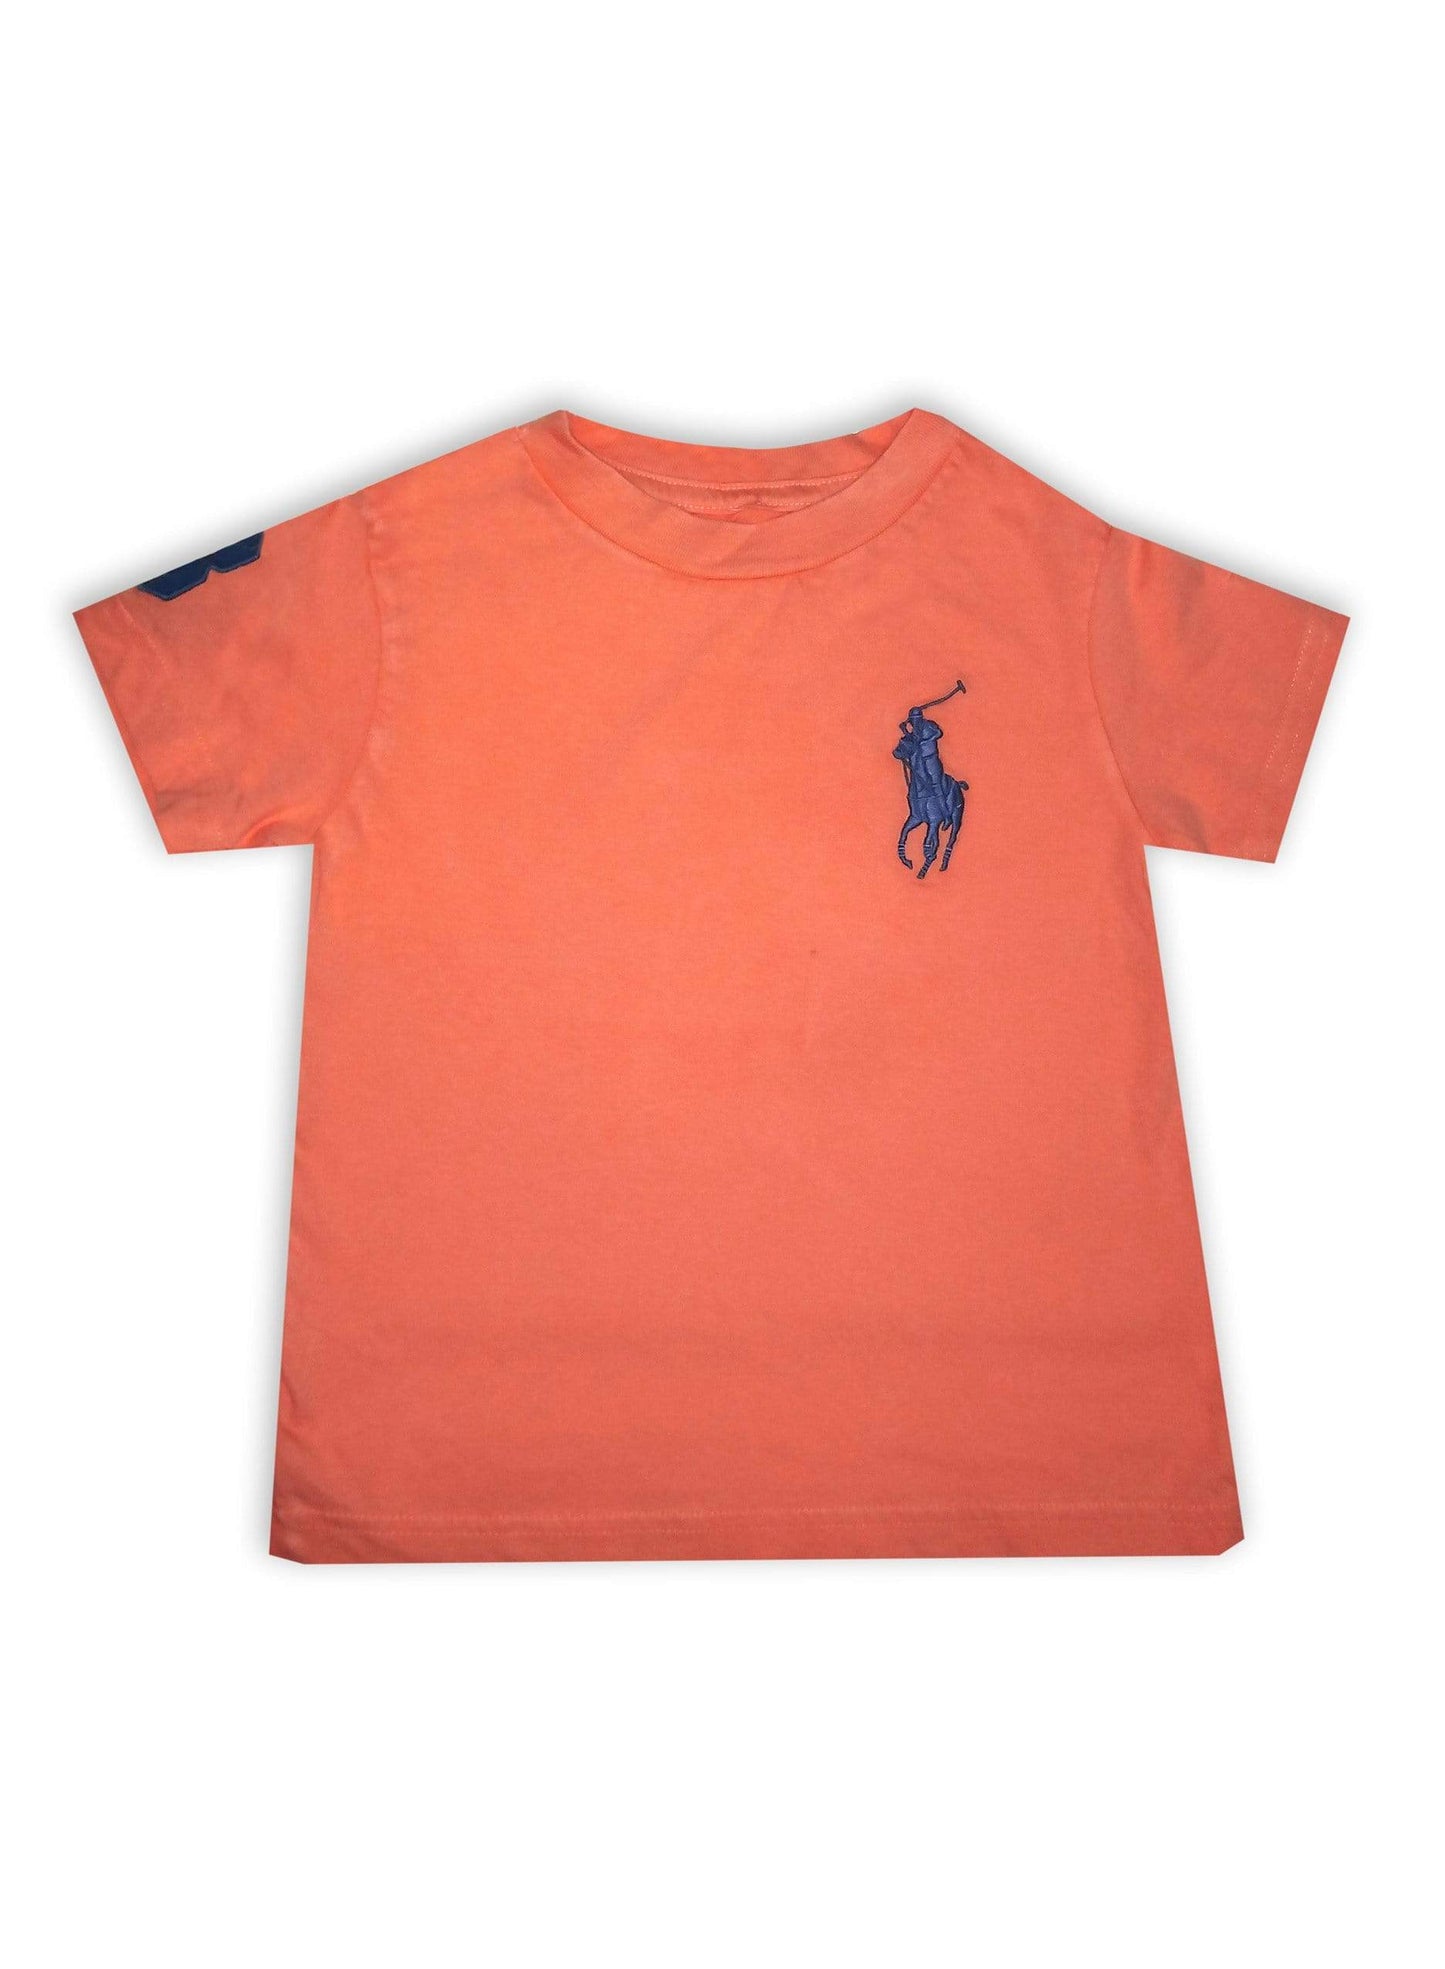 Ralph Lauren Apparel Ralph Lauren Boy's Logo T-Shirt